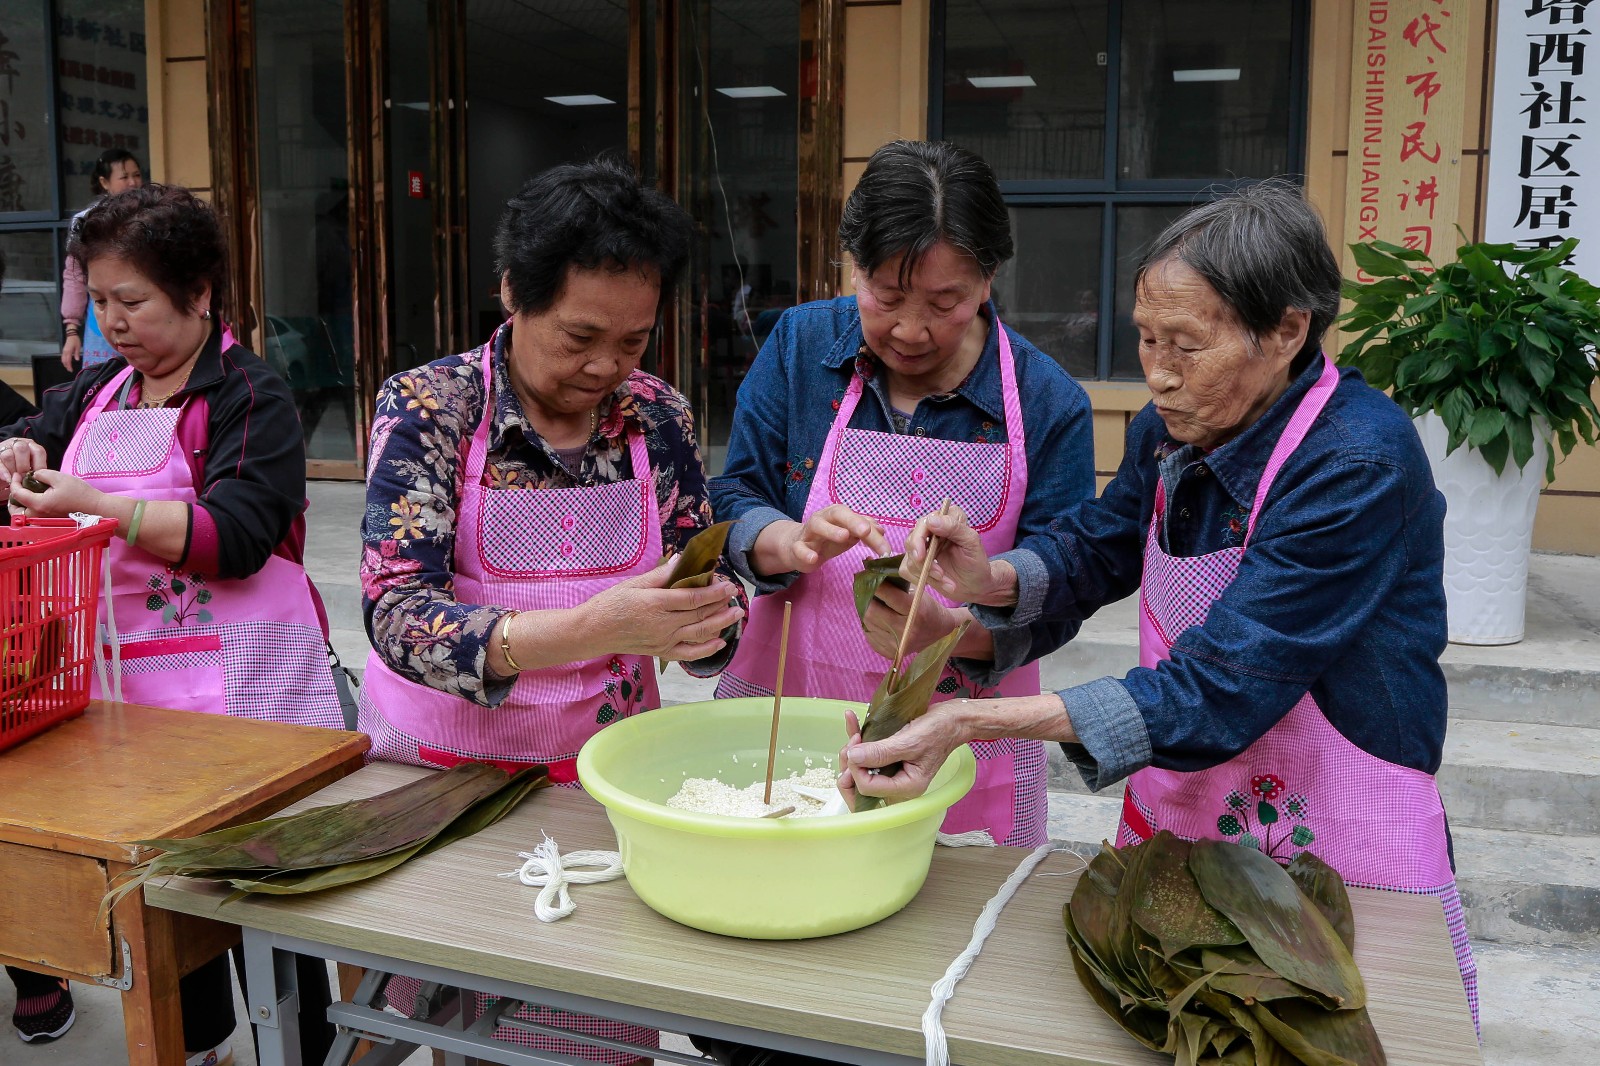 端午节: 带80岁奶奶参加社区包粽子比赛, 老人很开心哦